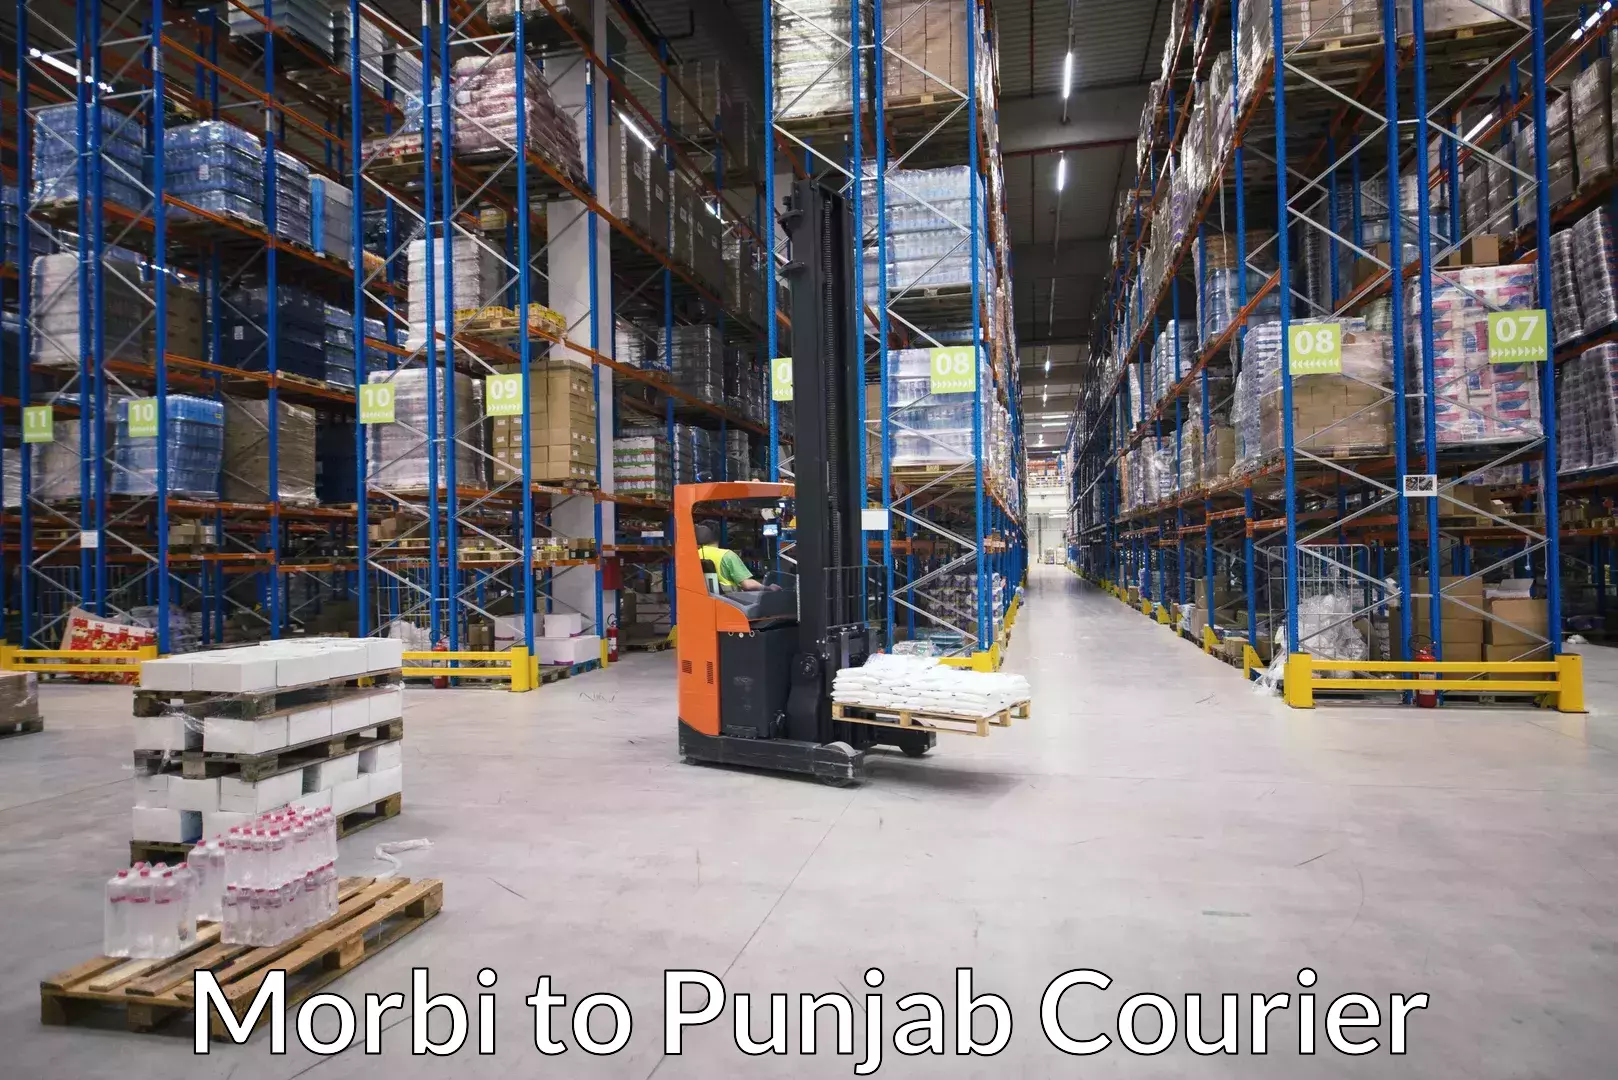 Door-to-door baggage service Morbi to Punjab